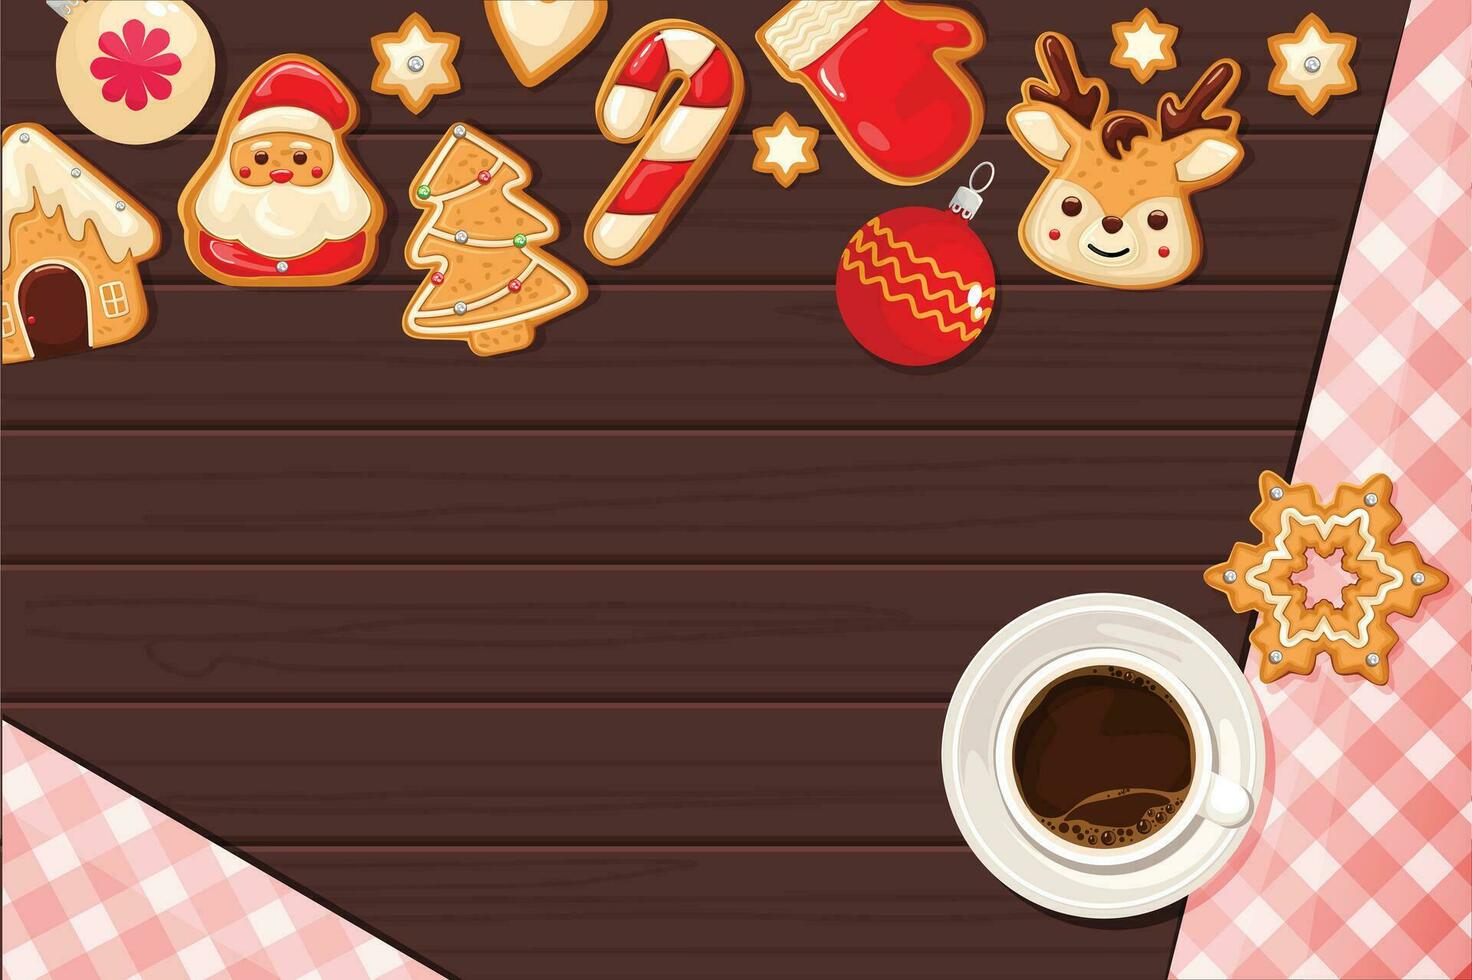 jul småkakor med glasyr och kaffe på en trä- bakgrund vektor